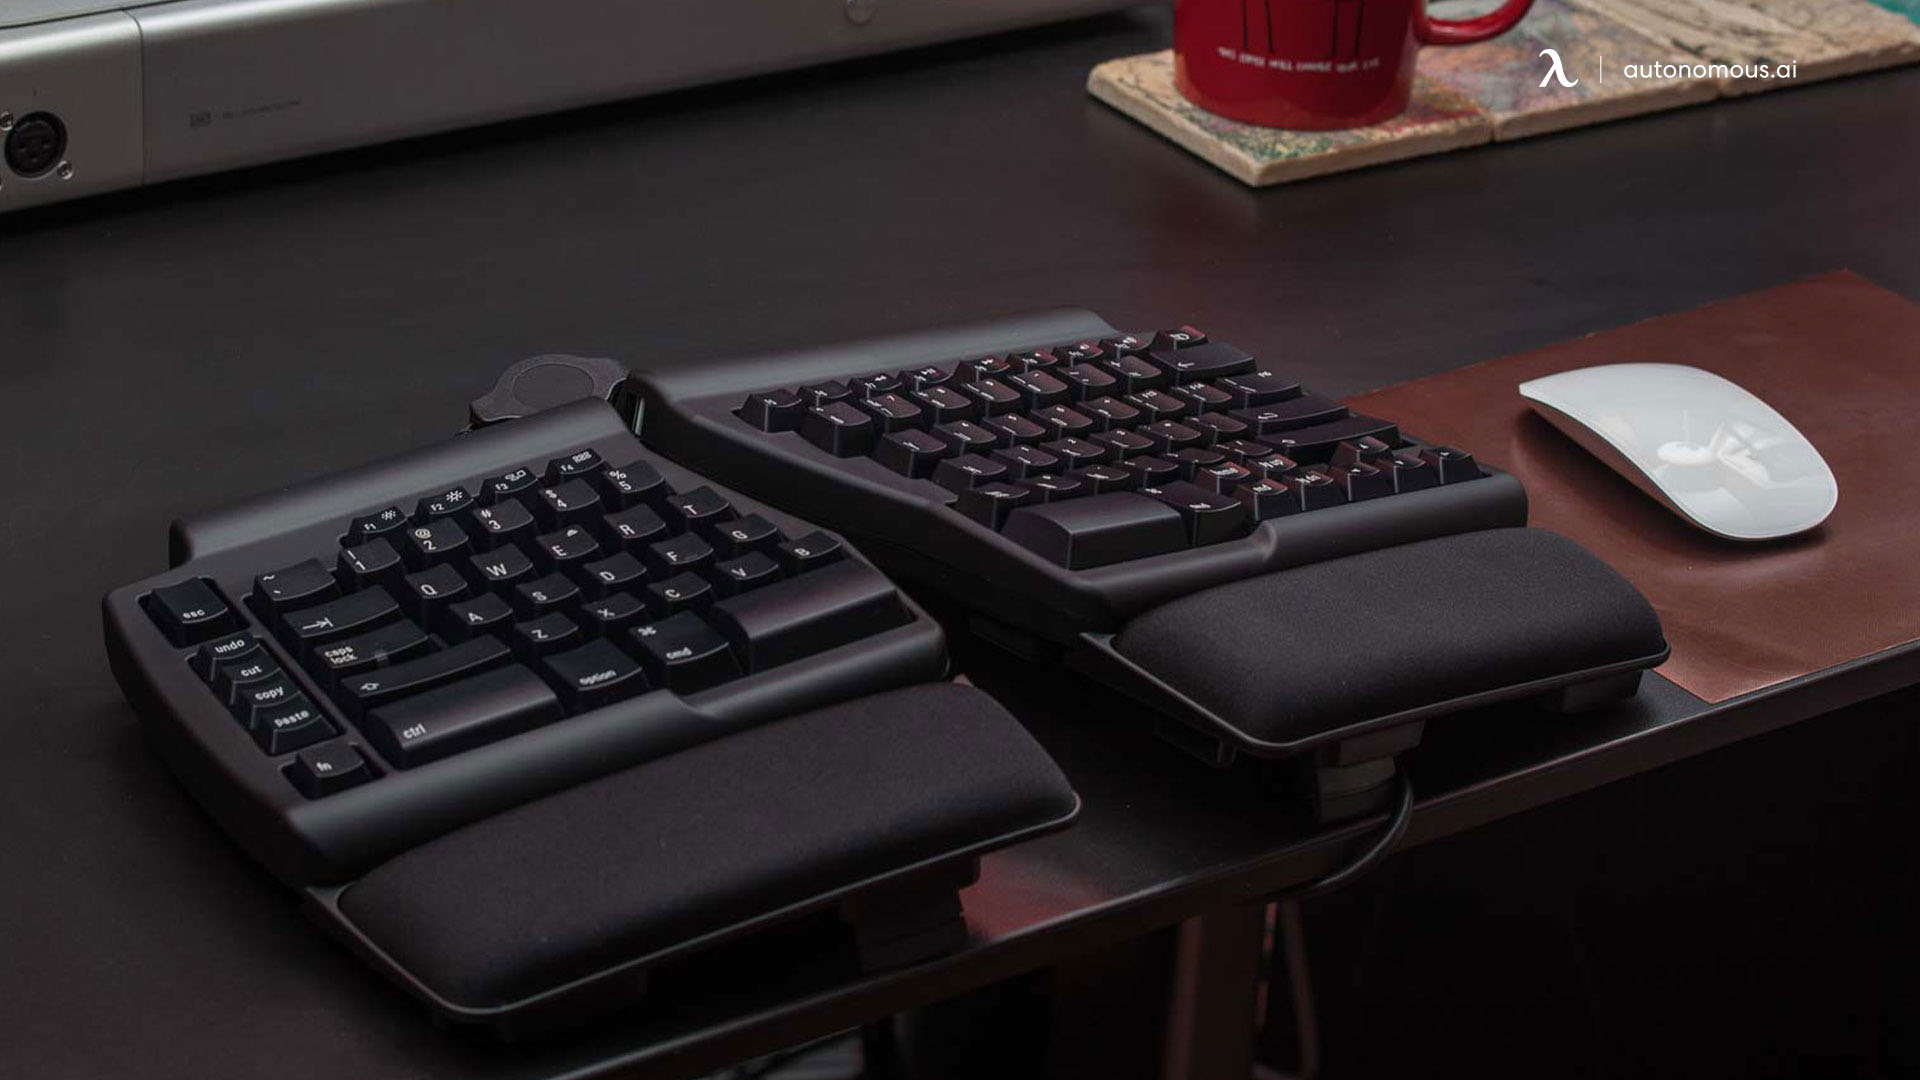 Ergonomic Keyboard in Hi tech office